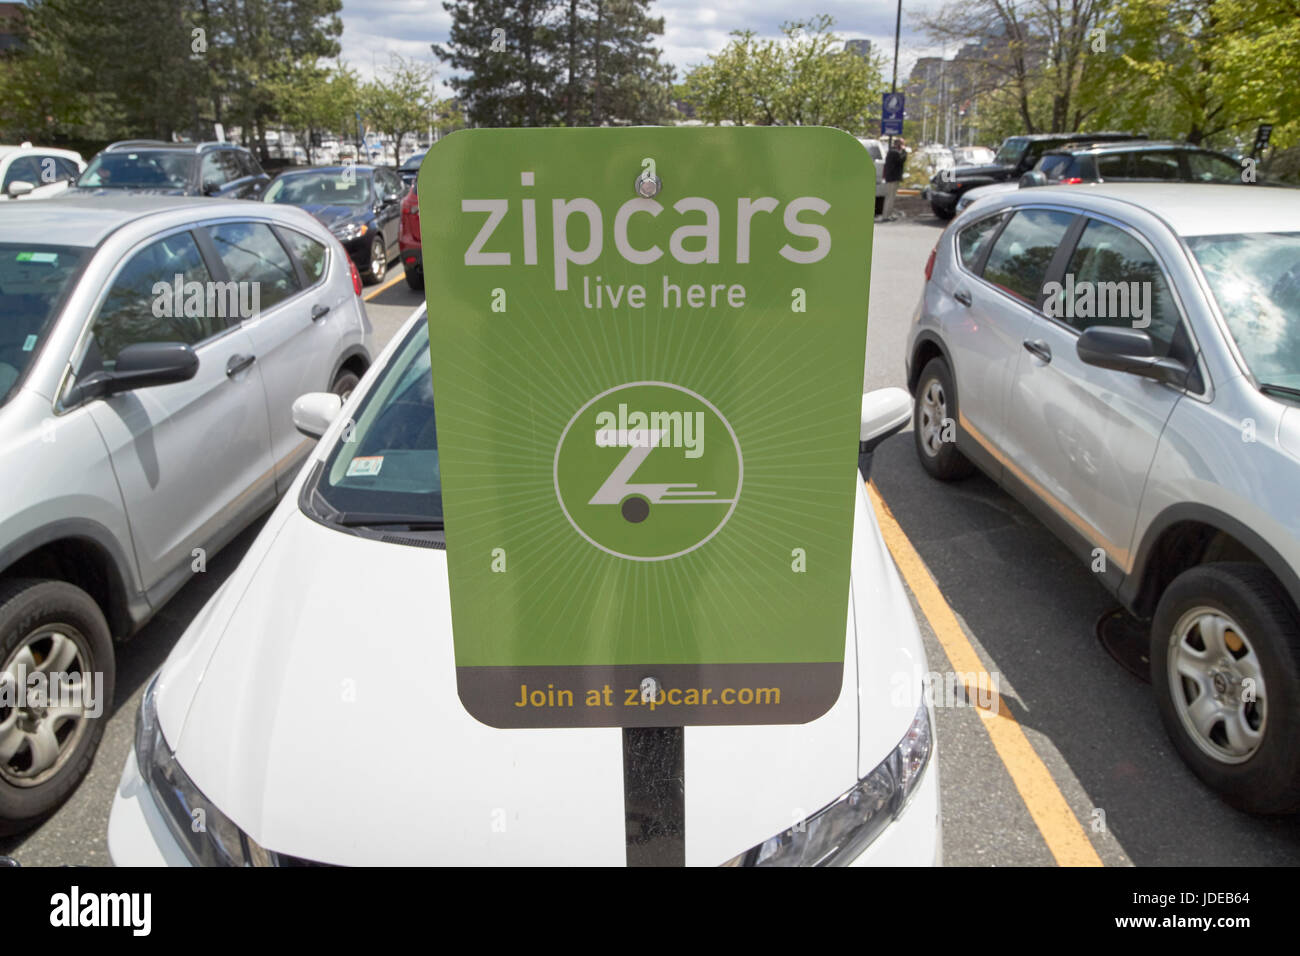 Aquí viven zipcars zipcar compartir coche aparcamiento en Boston, EE.UU. Foto de stock